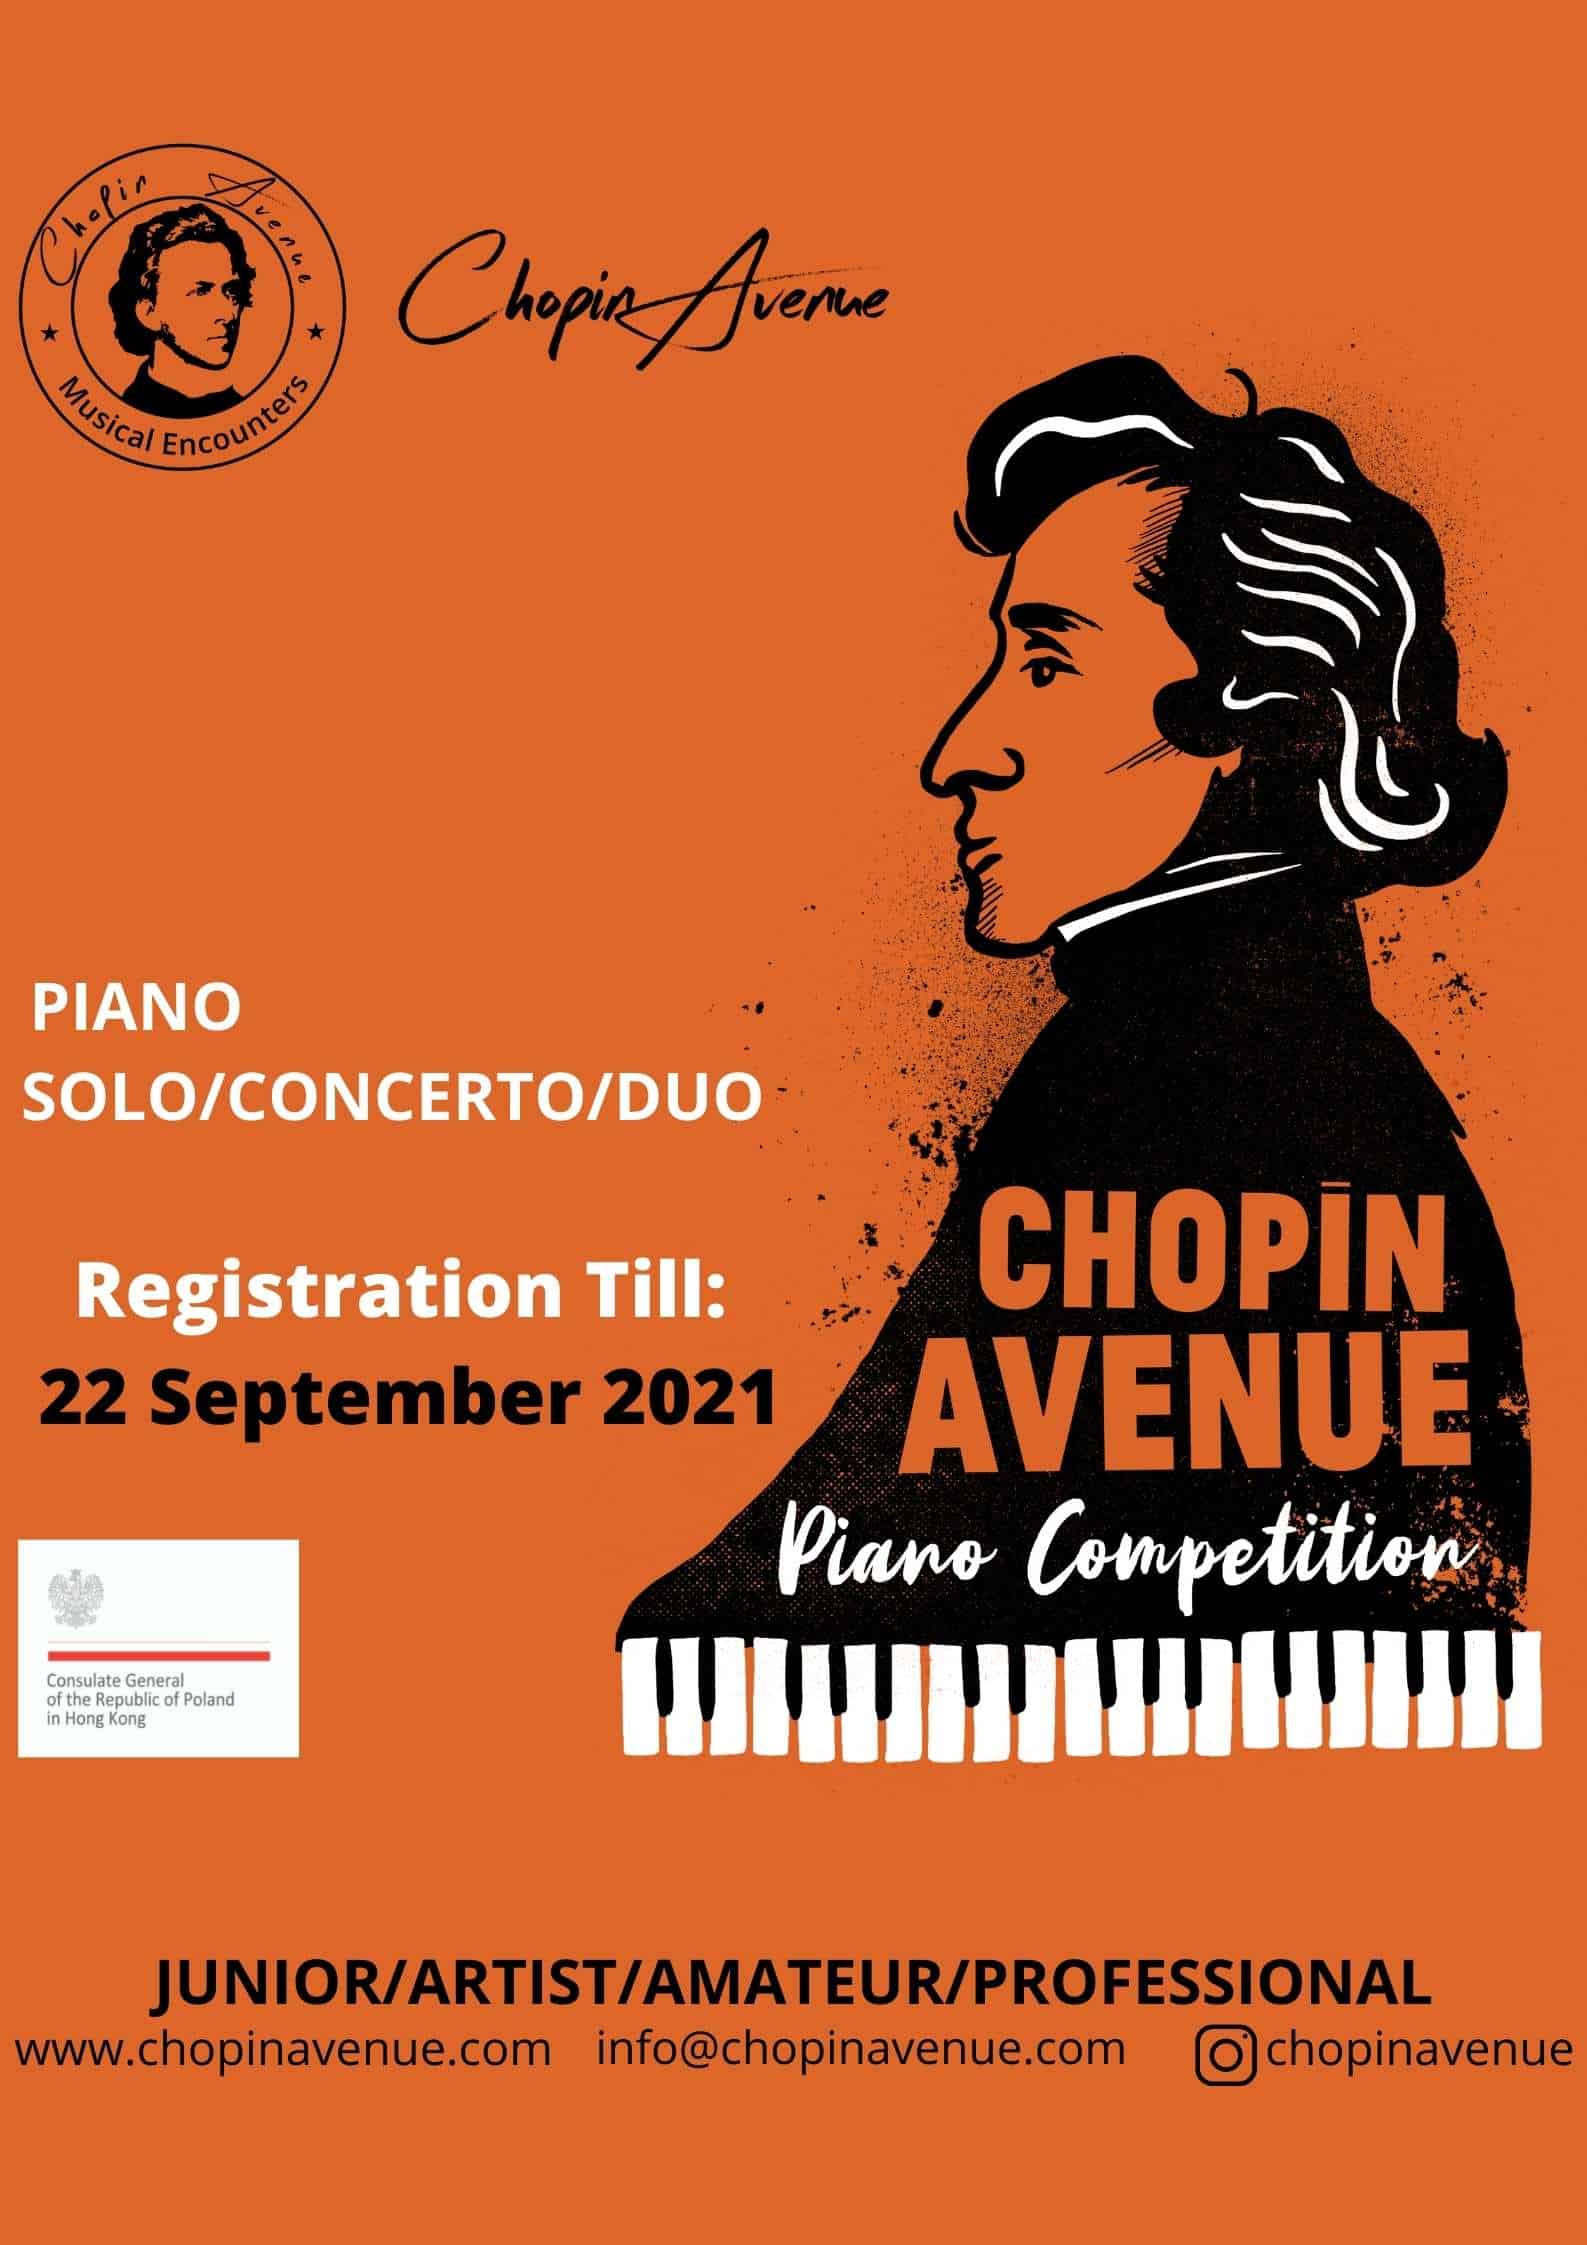 Chopin Avenue Piano Competition